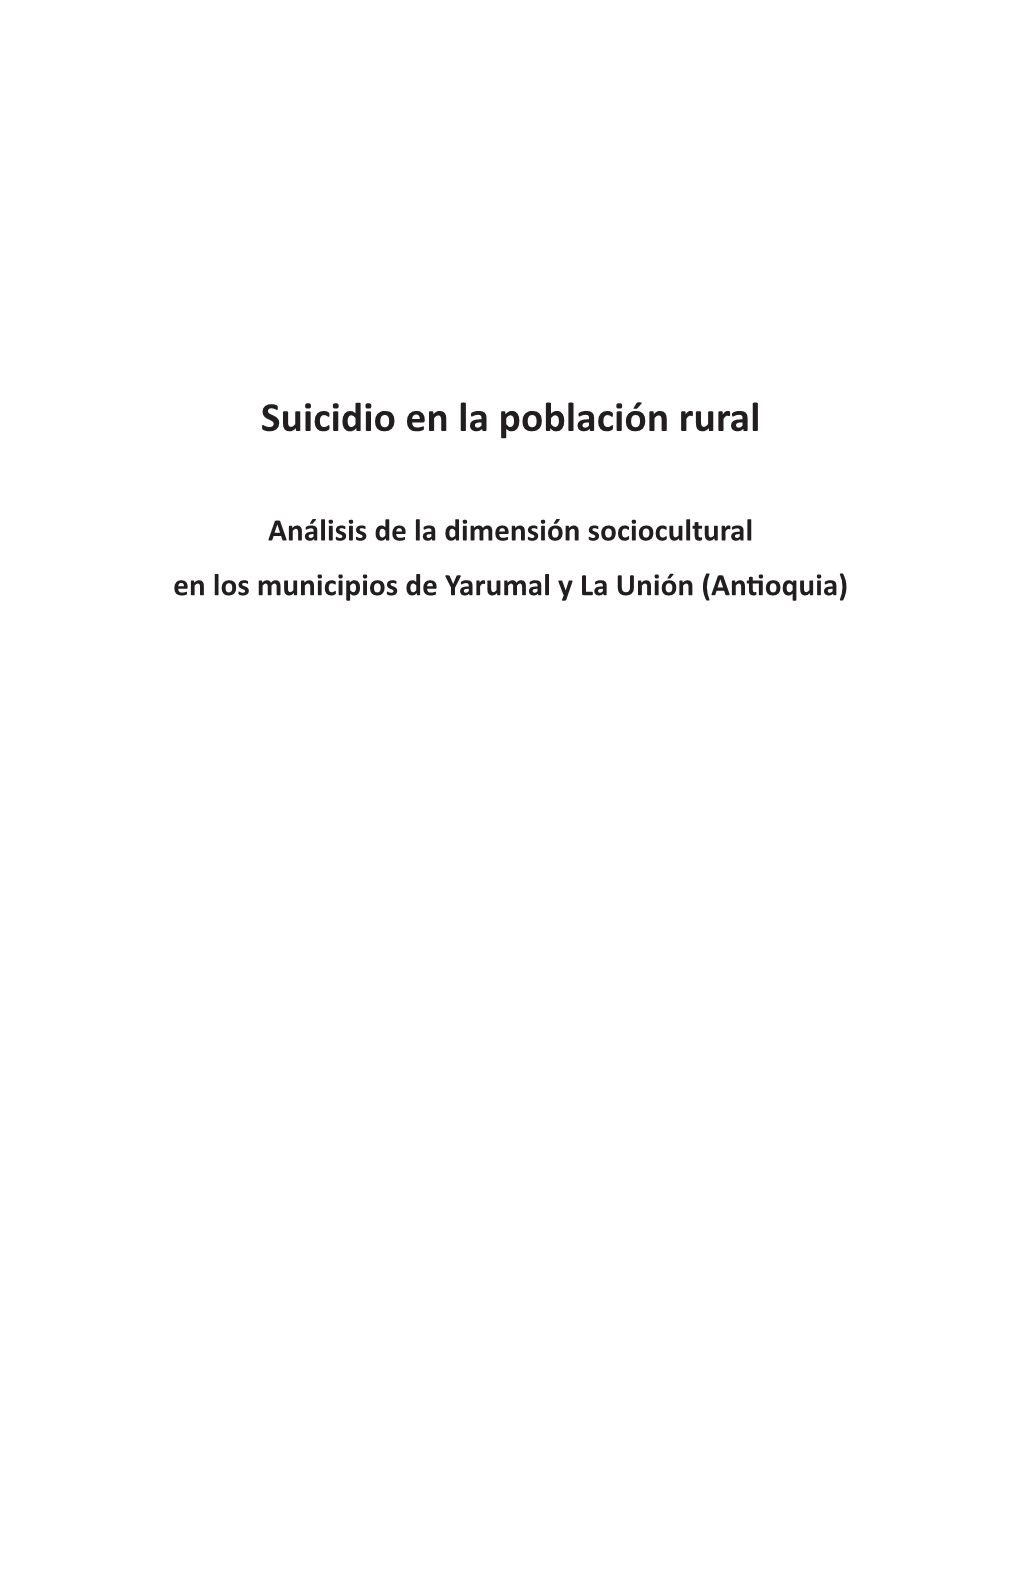 El Suicidio En La Población Rural (Colombia)